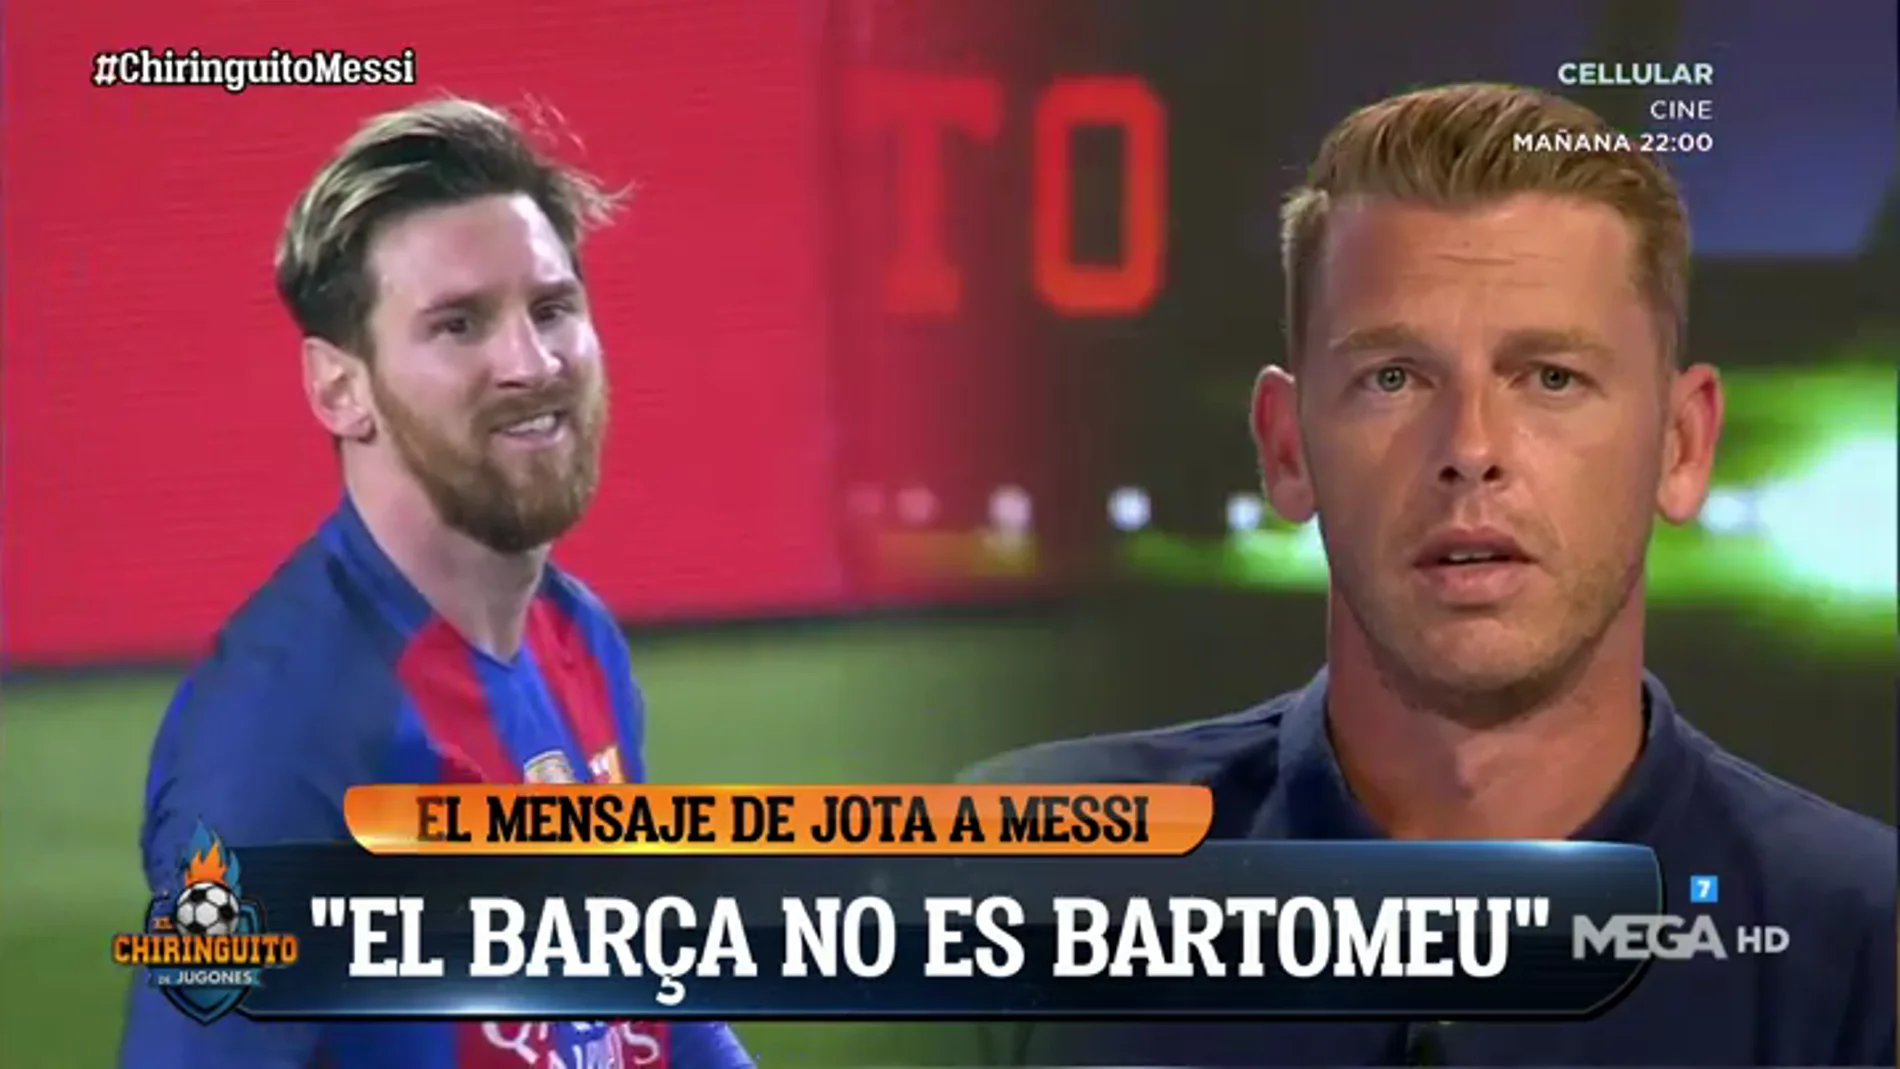 La emoción de Jota Jordi ante la posible salida de Messi: "Leo, el Barça no es Bartomeu, el Barça somos nosotros"